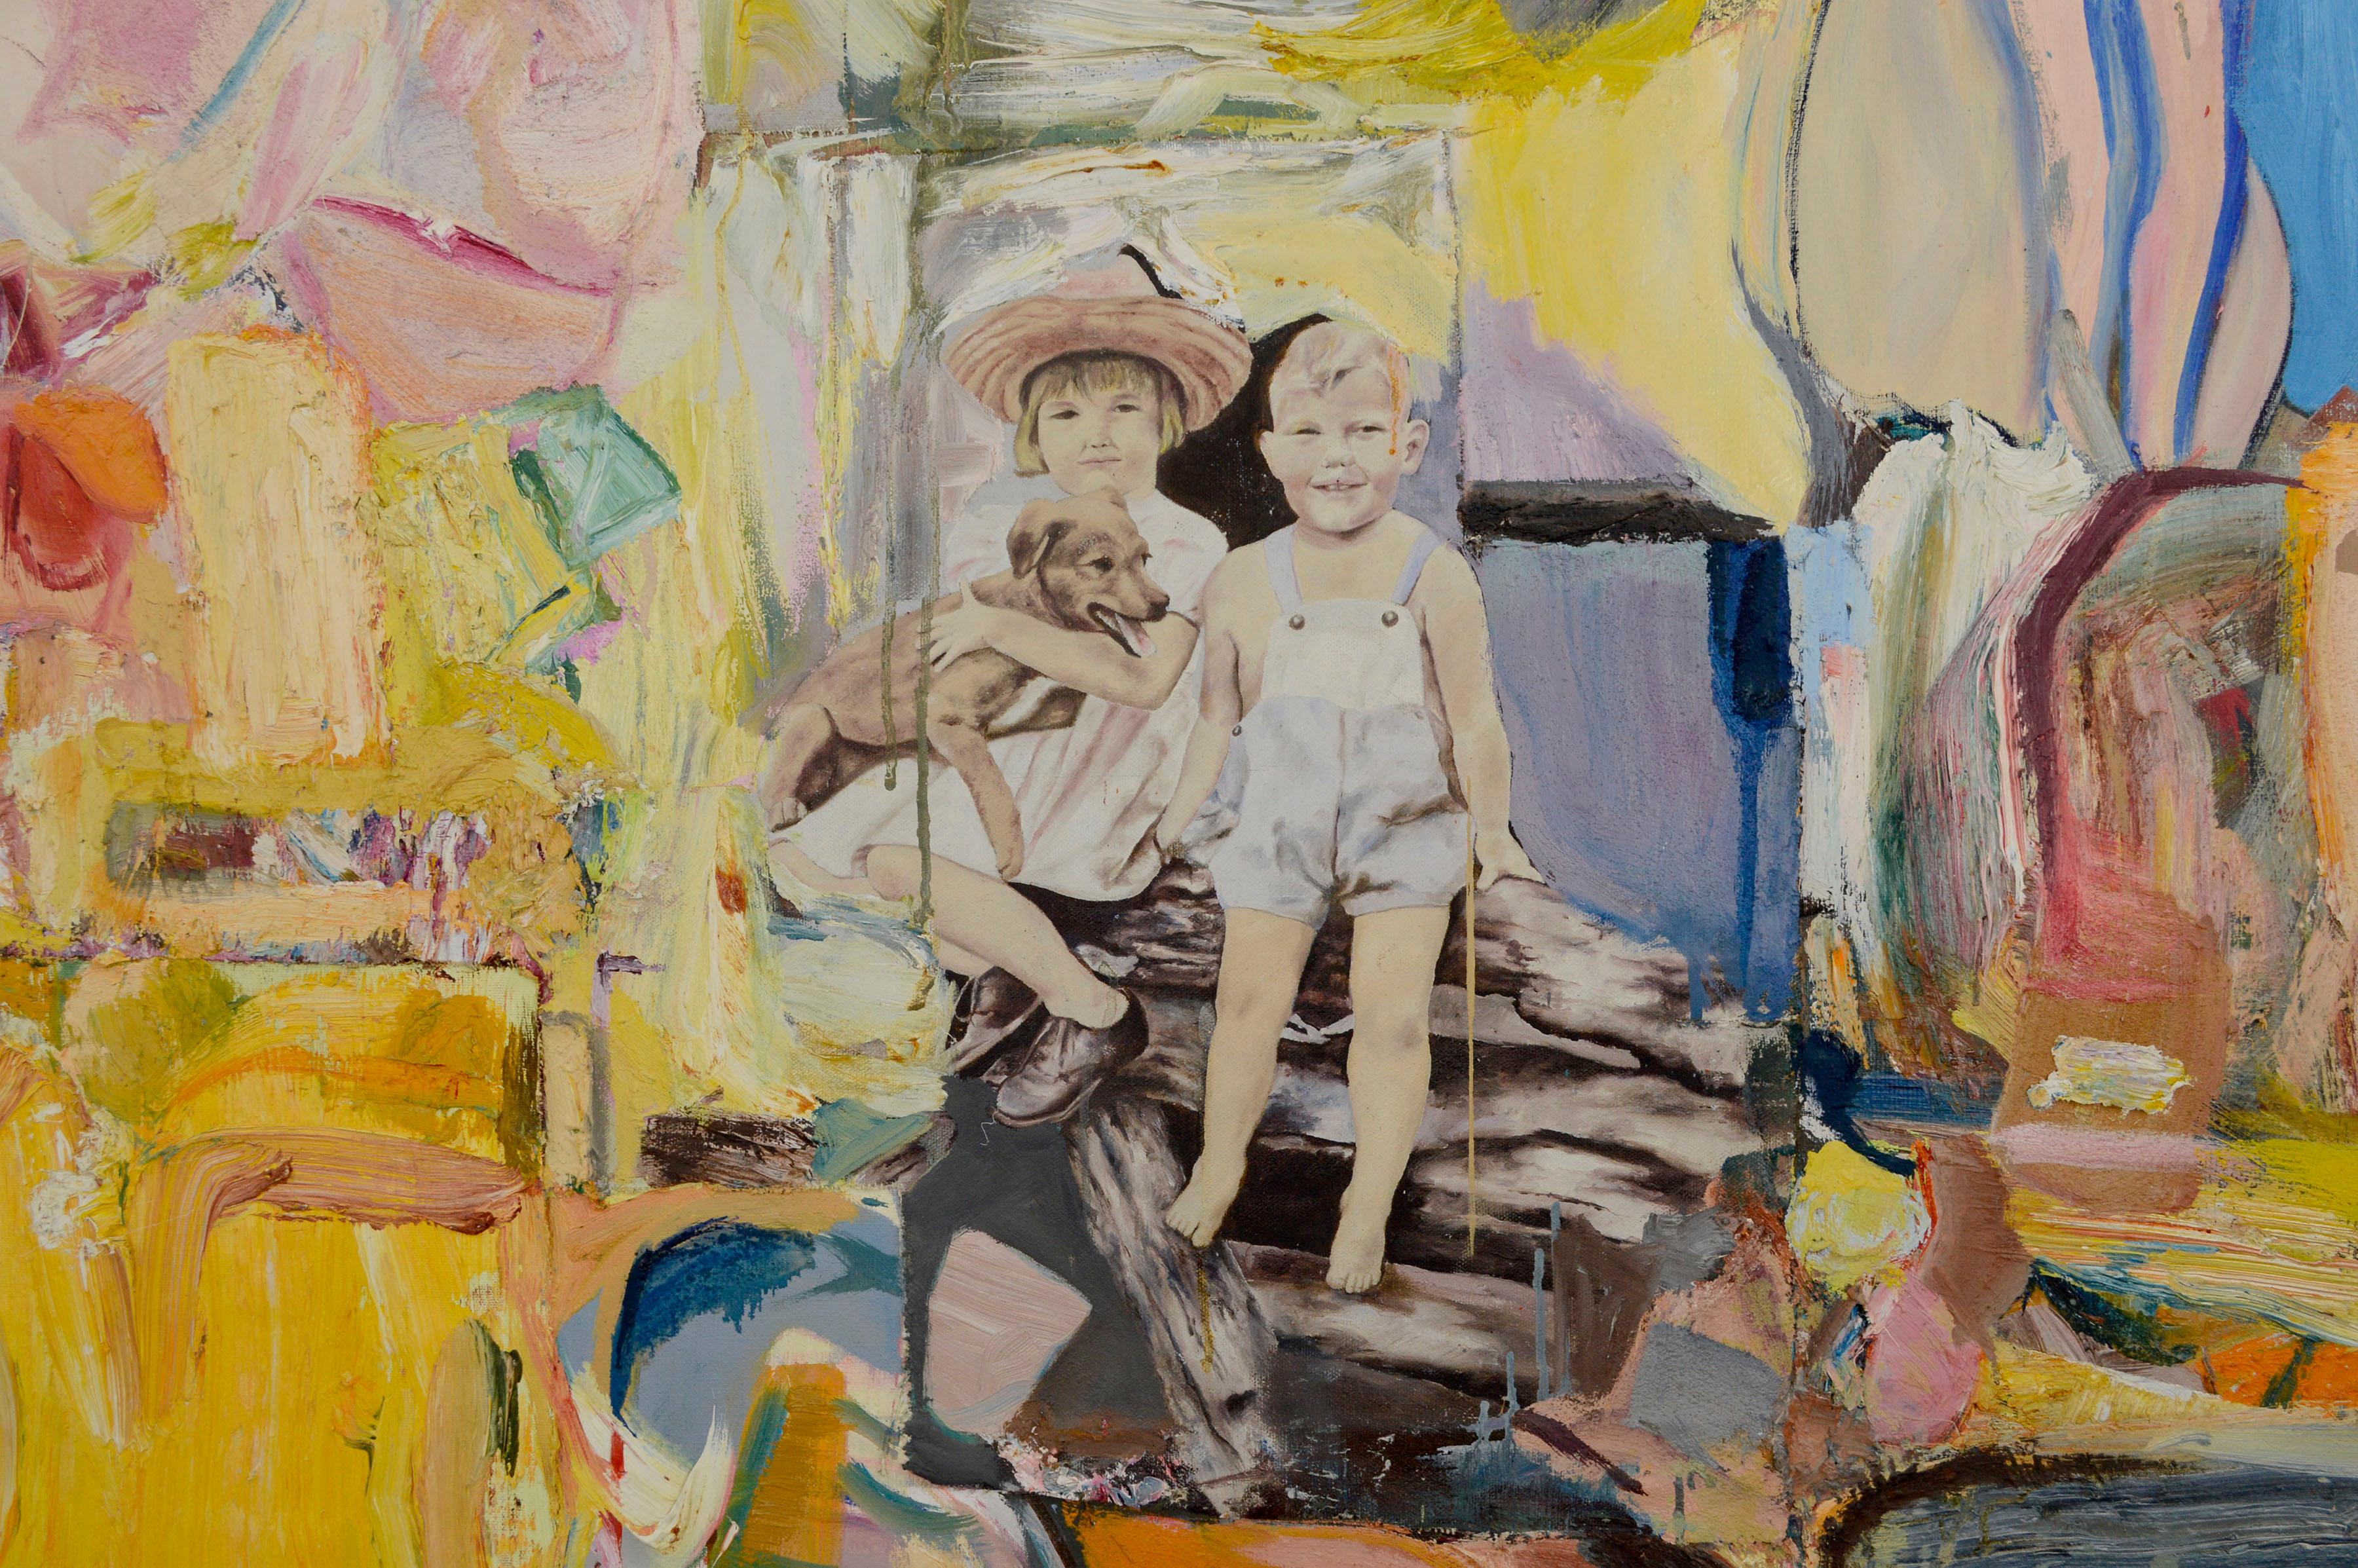 Rosa abstrakt-expressionistische Figurative Komposition mit Collage, großformatig, zeitgenössisch (Abstrakter Expressionismus), Painting, von Michael Pauker 